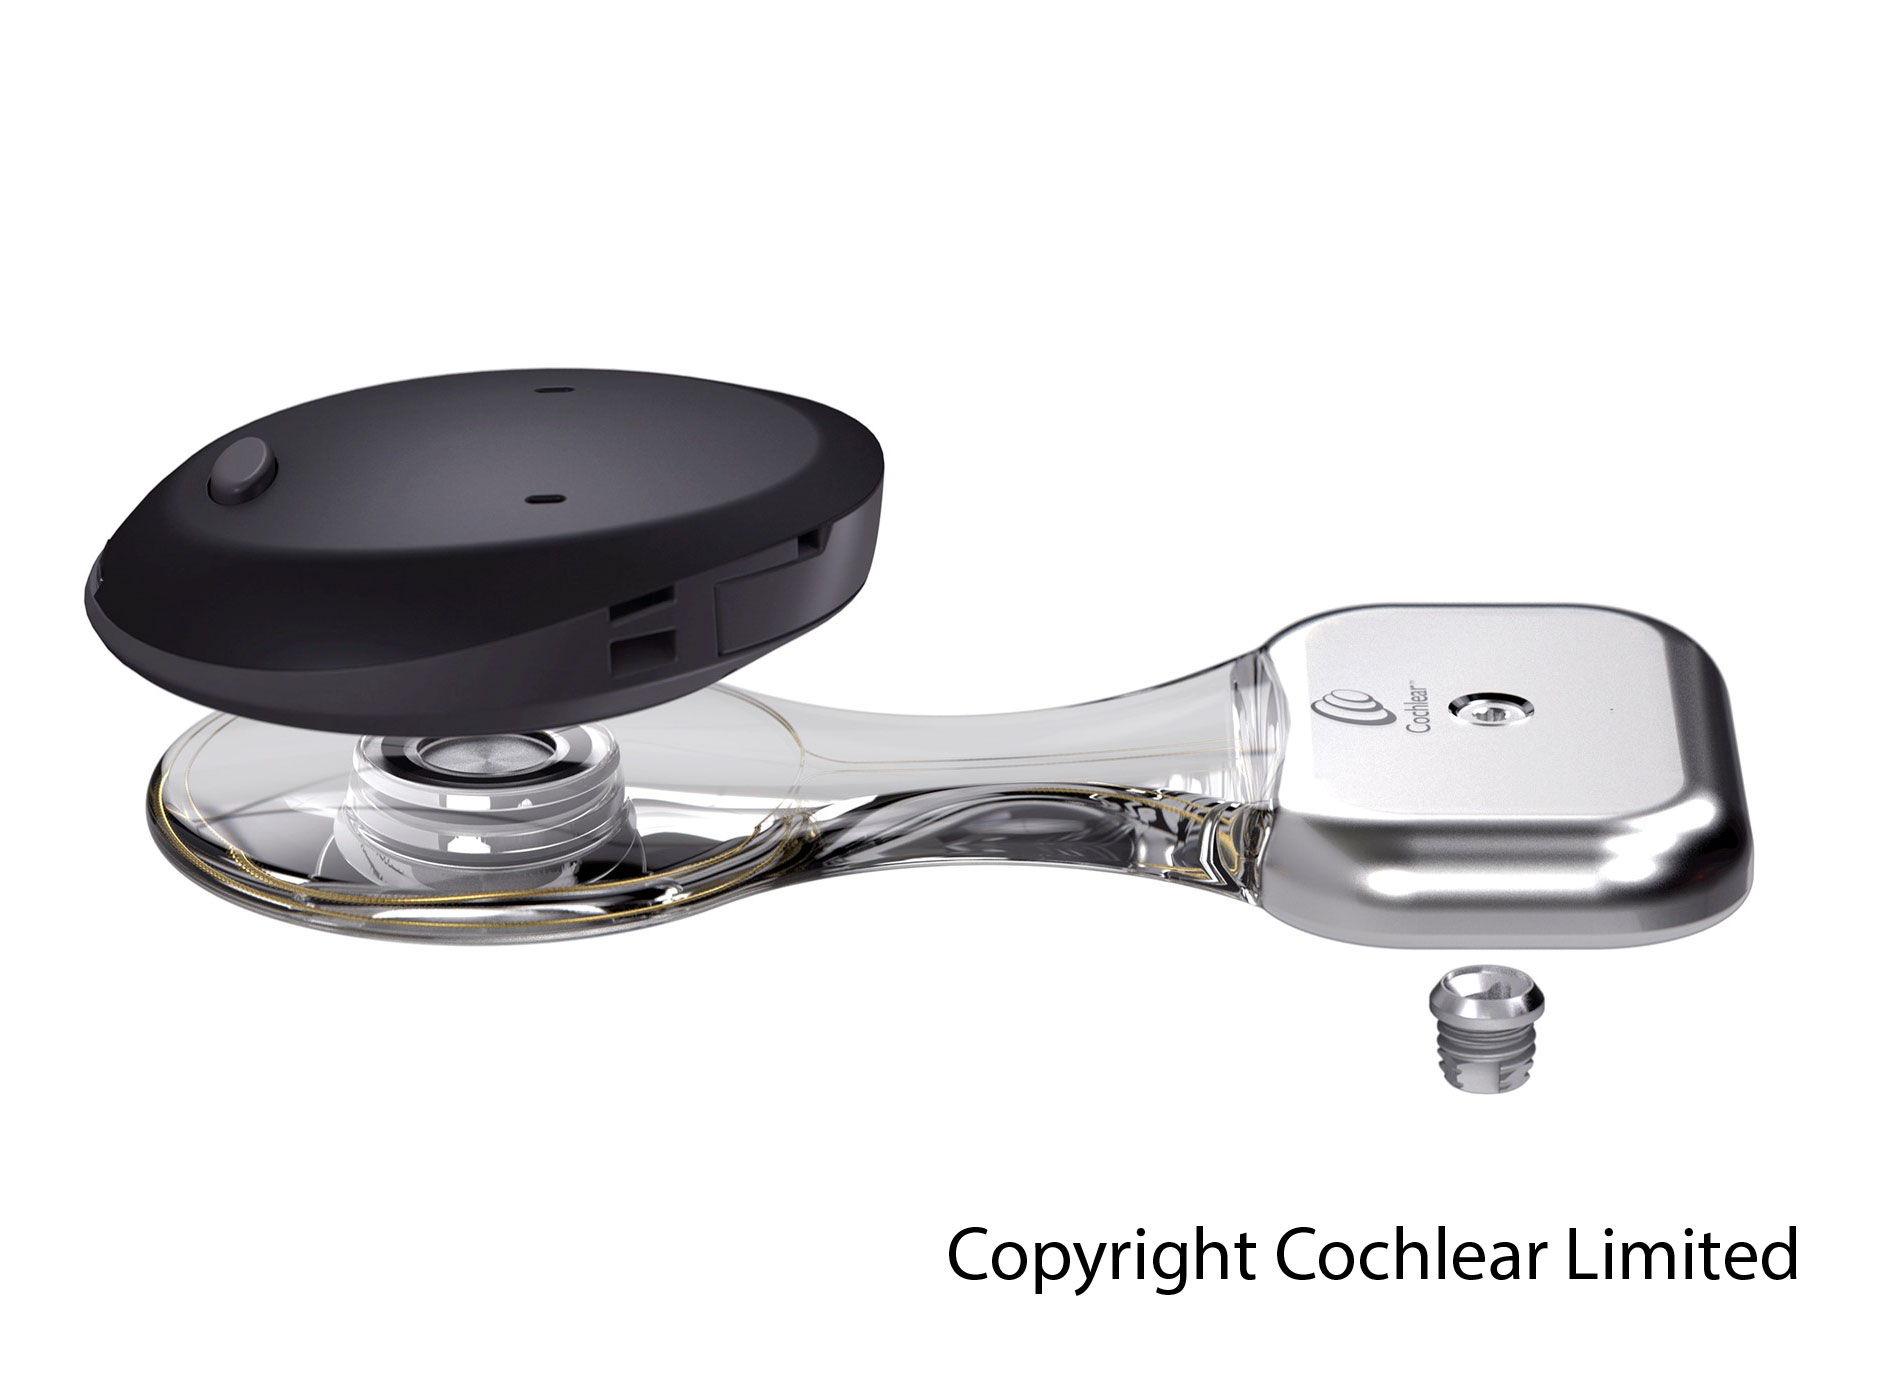 Het botverankerd hoortoestel bestaat uit een spoel met piëzo-elektrische transducer. Het wordt volledig onderhuids met een botimplantaat vastgezet in het bot. De geluidsprocessor (zwart) die aan de buitenkant zit, vangt geluiden en spraak op en stuurt deze draadloos versterkt door naar het implantaat. (Foto copyright Cochlear Limited) 